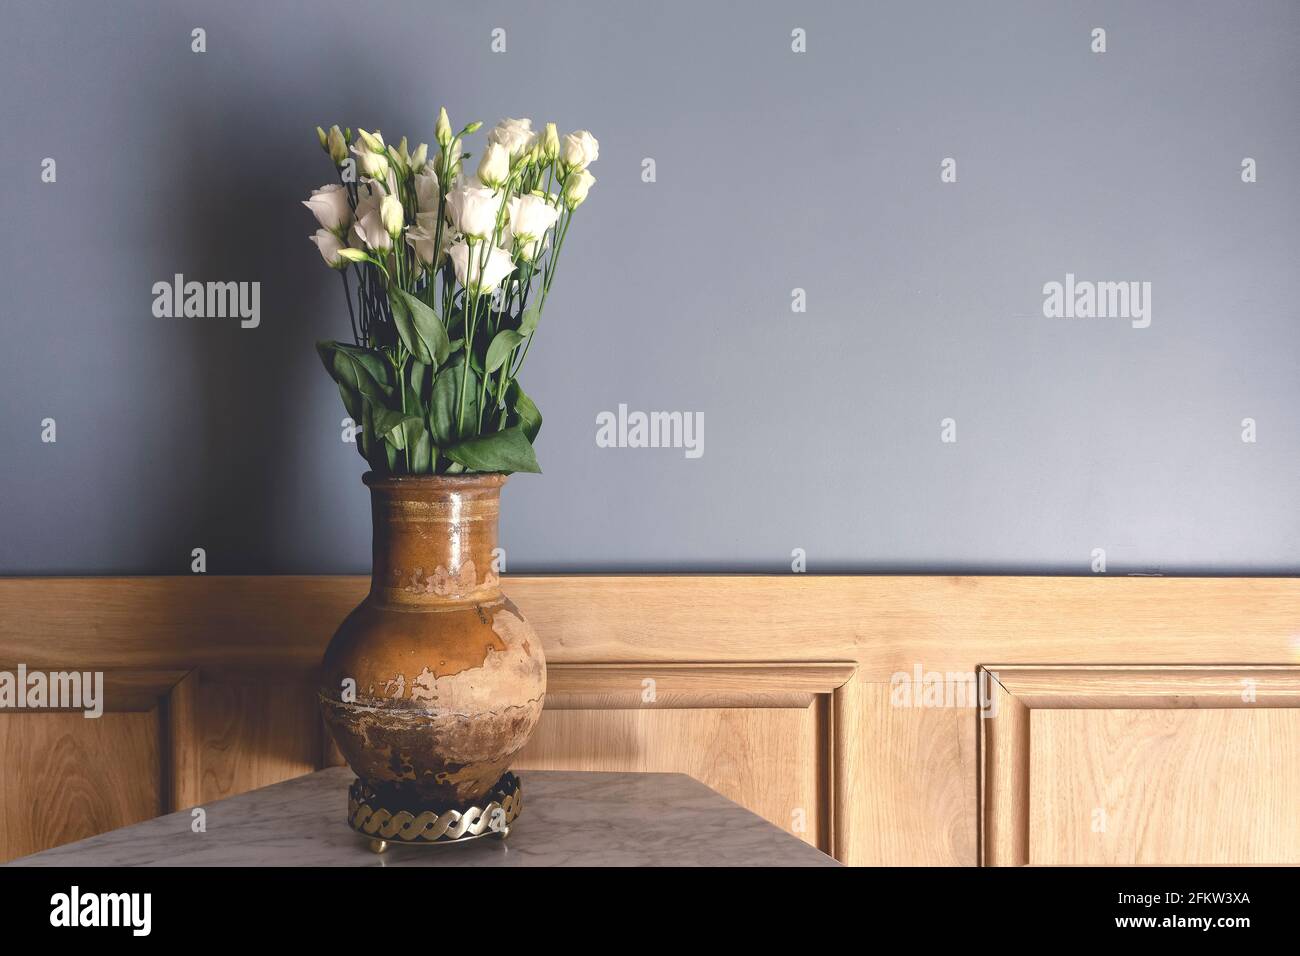 Chambre de style rétro. Vieux vase en argile avec fleurs blanches roses sur le fond d'un mur gris vide. Intérieur vintage d'un salon de maison ancienne. Décoration ancienne et décoration intérieure. Photo de haute qualité Banque D'Images